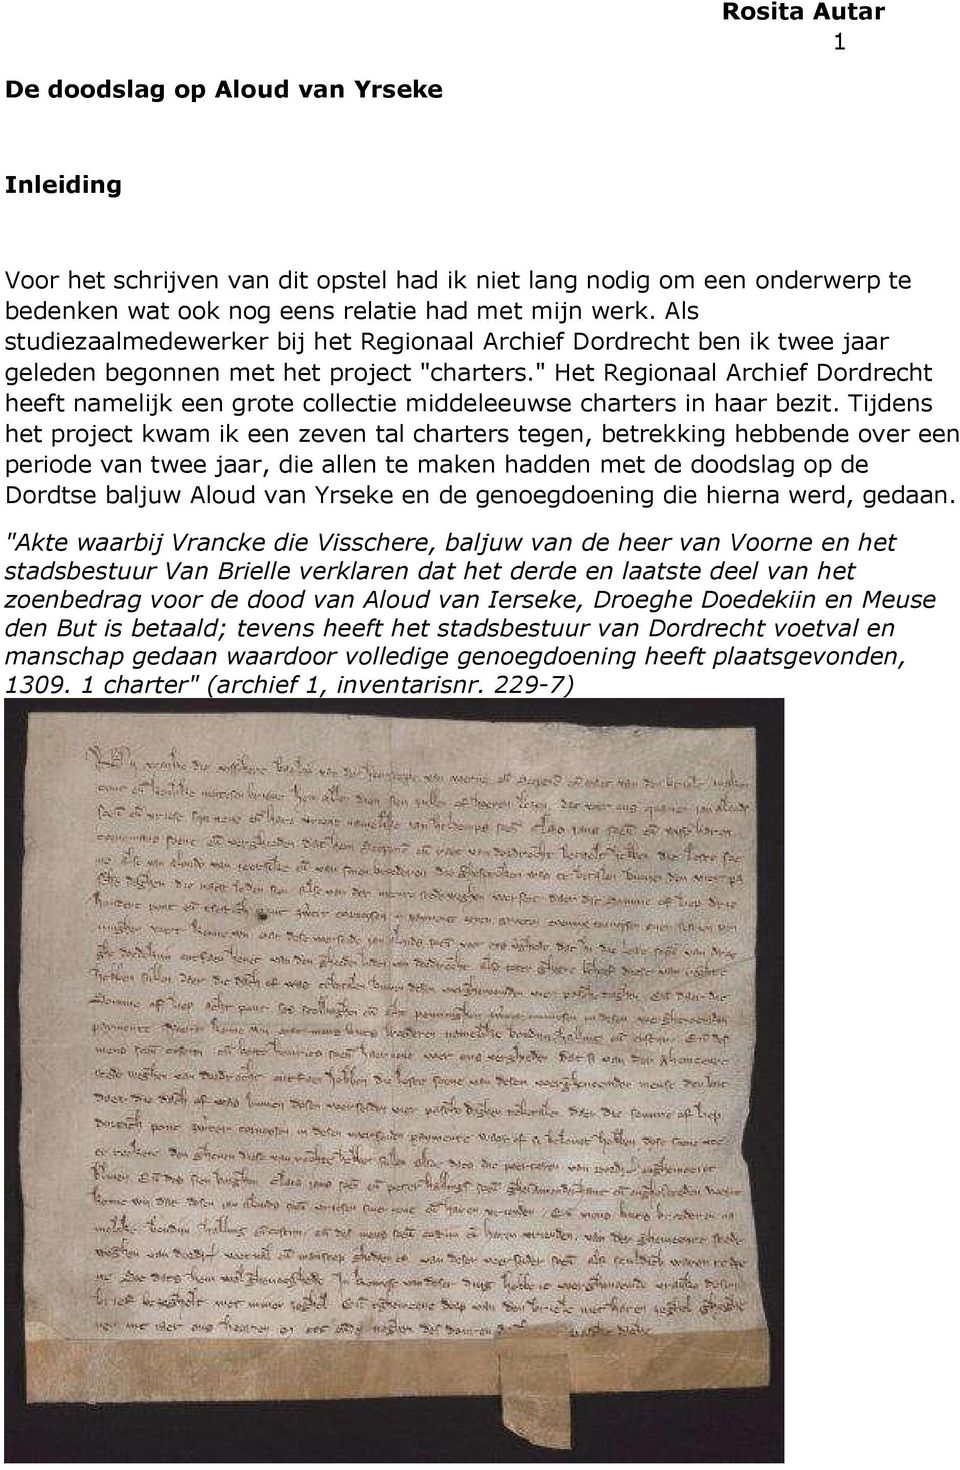 " Het Regionaal Archief Dordrecht heeft namelijk een grote collectie middeleeuwse charters in haar bezit.